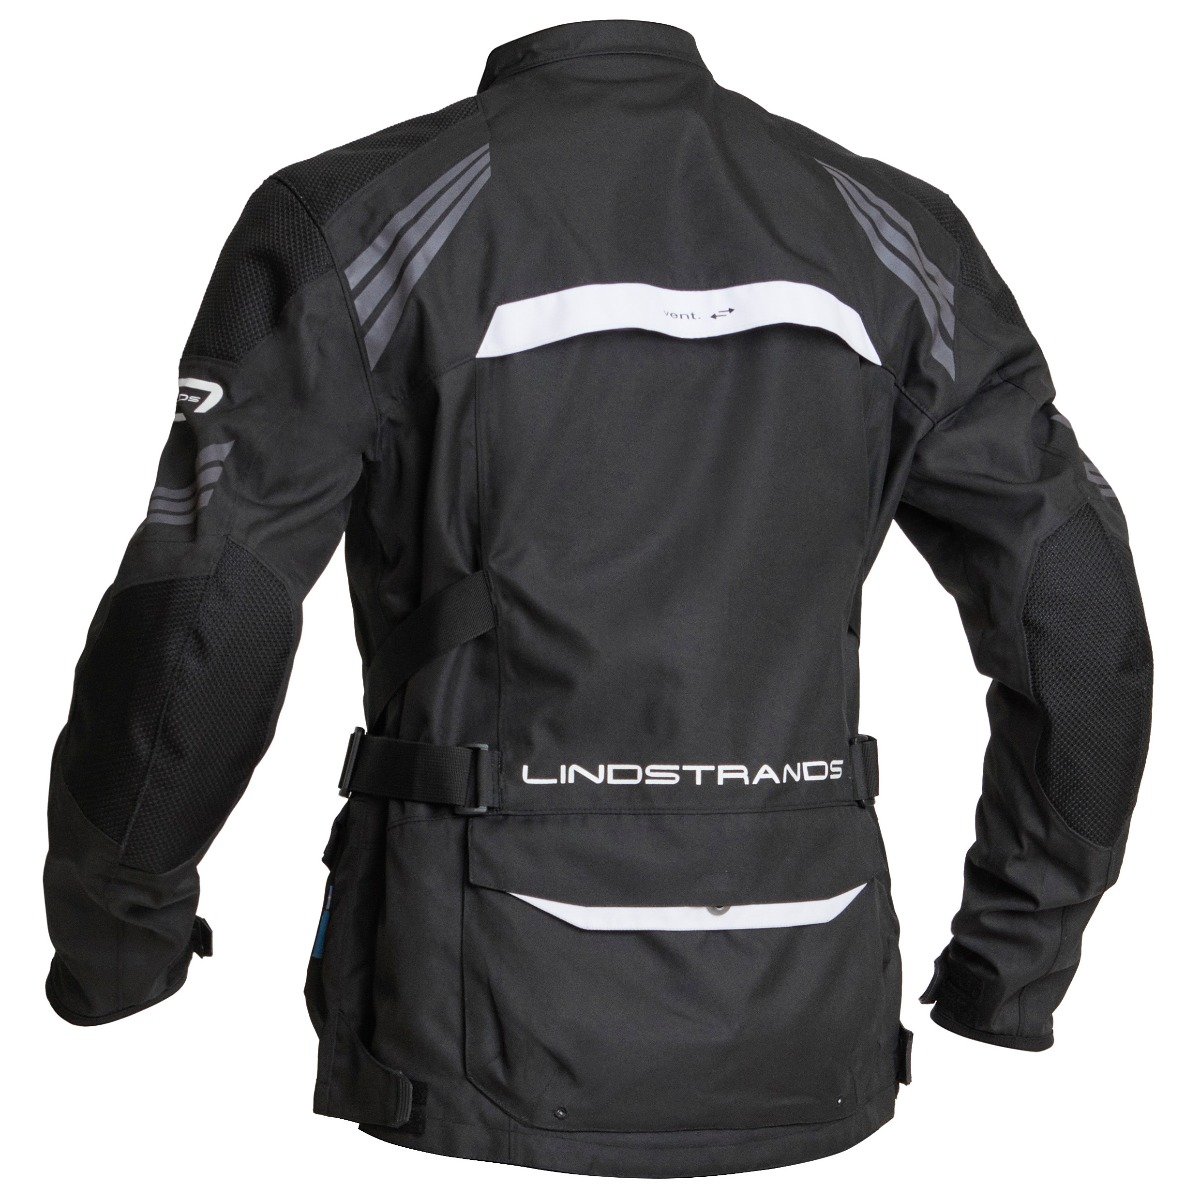 Image of Lindstrands Transtrand Jacket Black White Size 56 EN